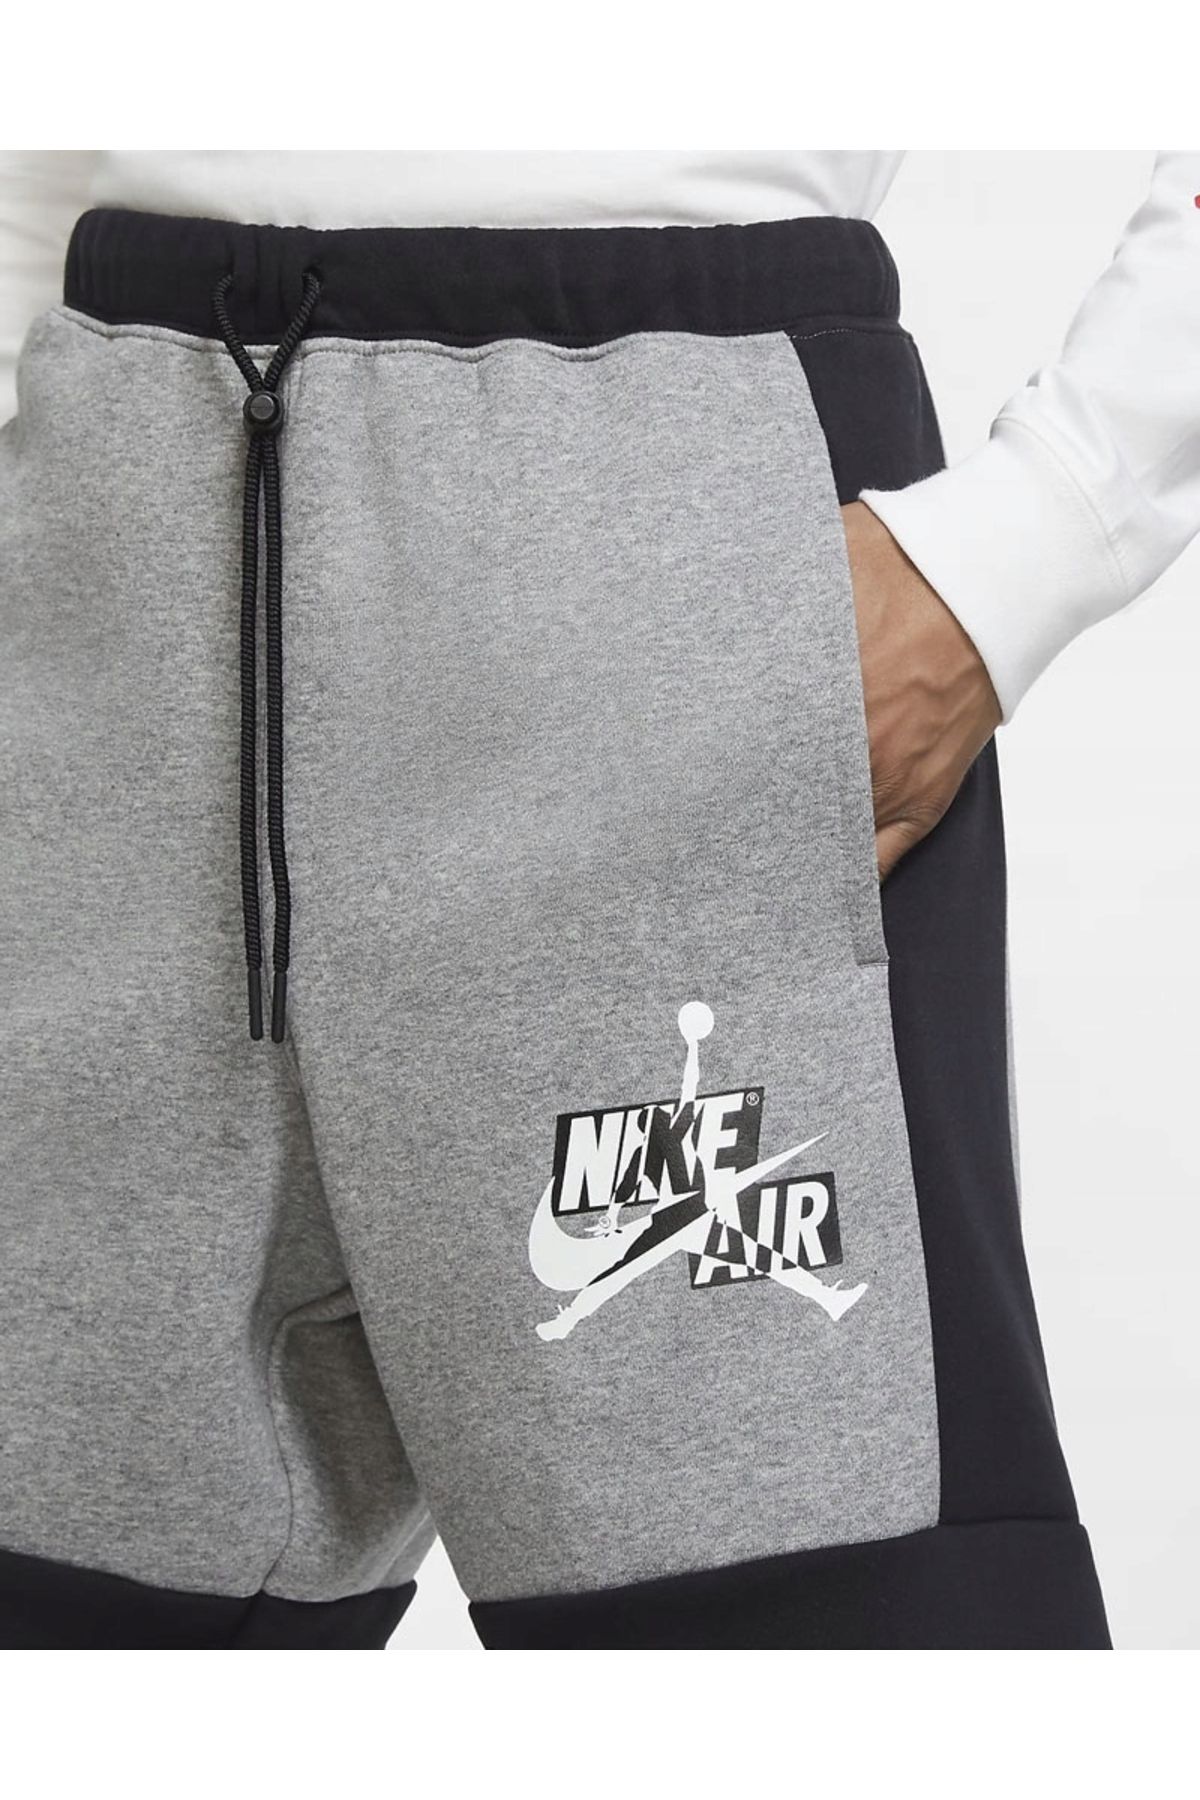 Nike Air Jordon Fleece Shorts Black White Mens Dq6051-091 Fiyatı ...